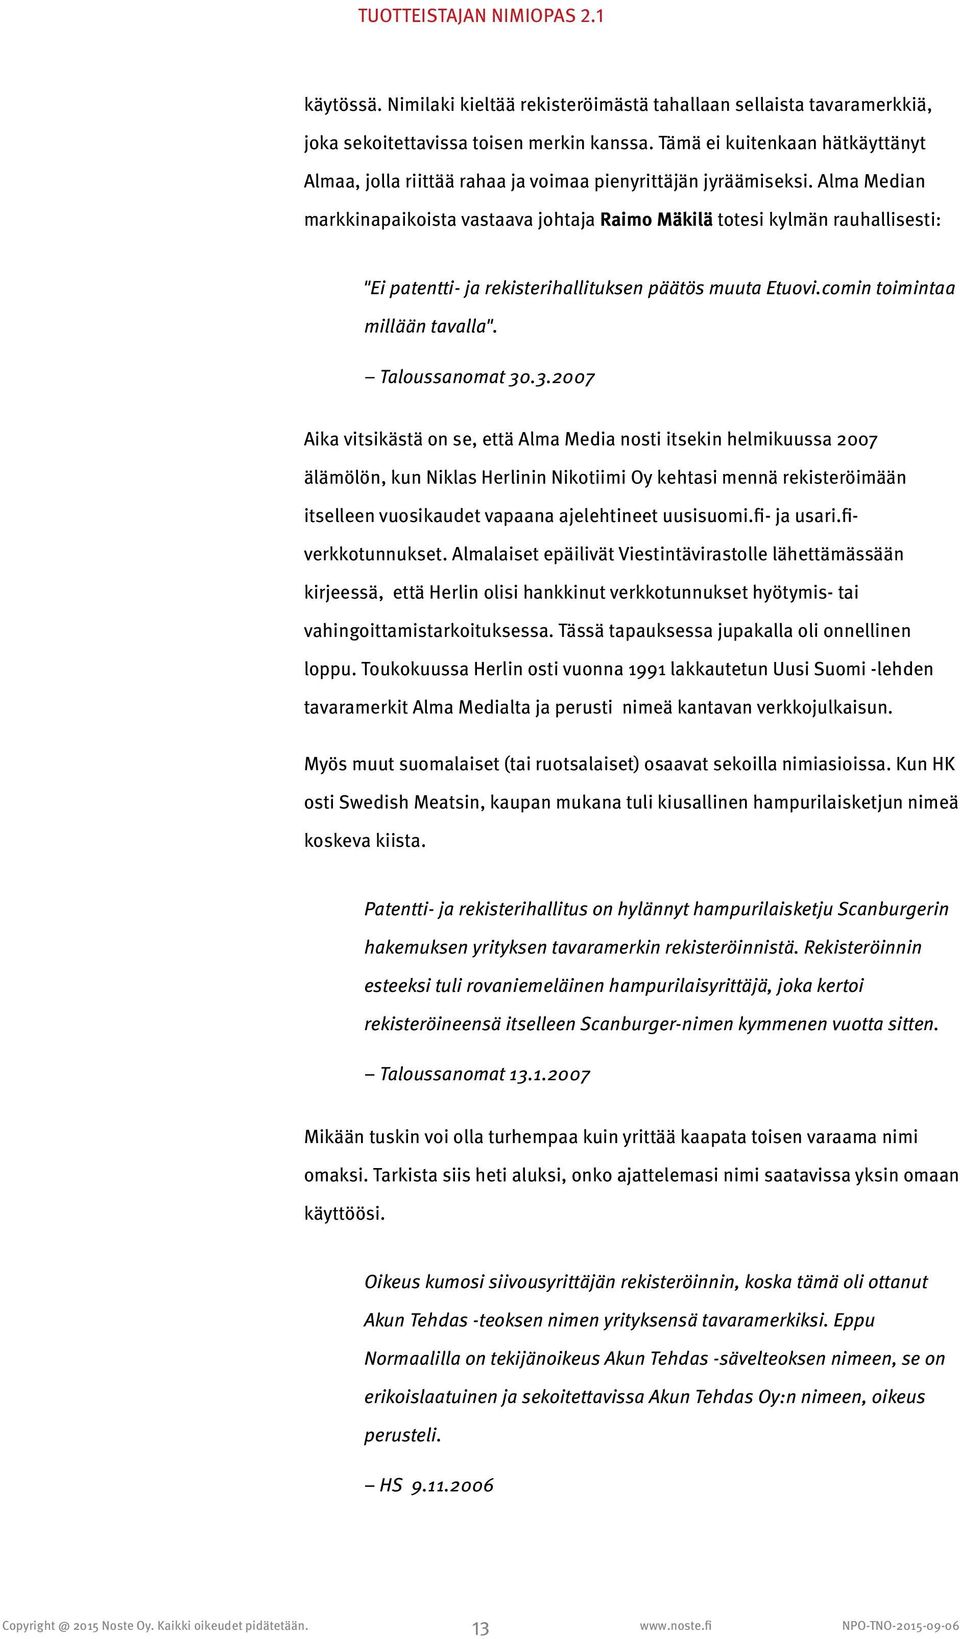 Alma Median markkinapaikoista vastaava johtaja Raimo Mäkilä totesi kylmän rauhallisesti: "Ei patentti- ja rekisterihallituksen päätös muuta Etuovi.comin toimintaa millään tavalla". Taloussanomat 30